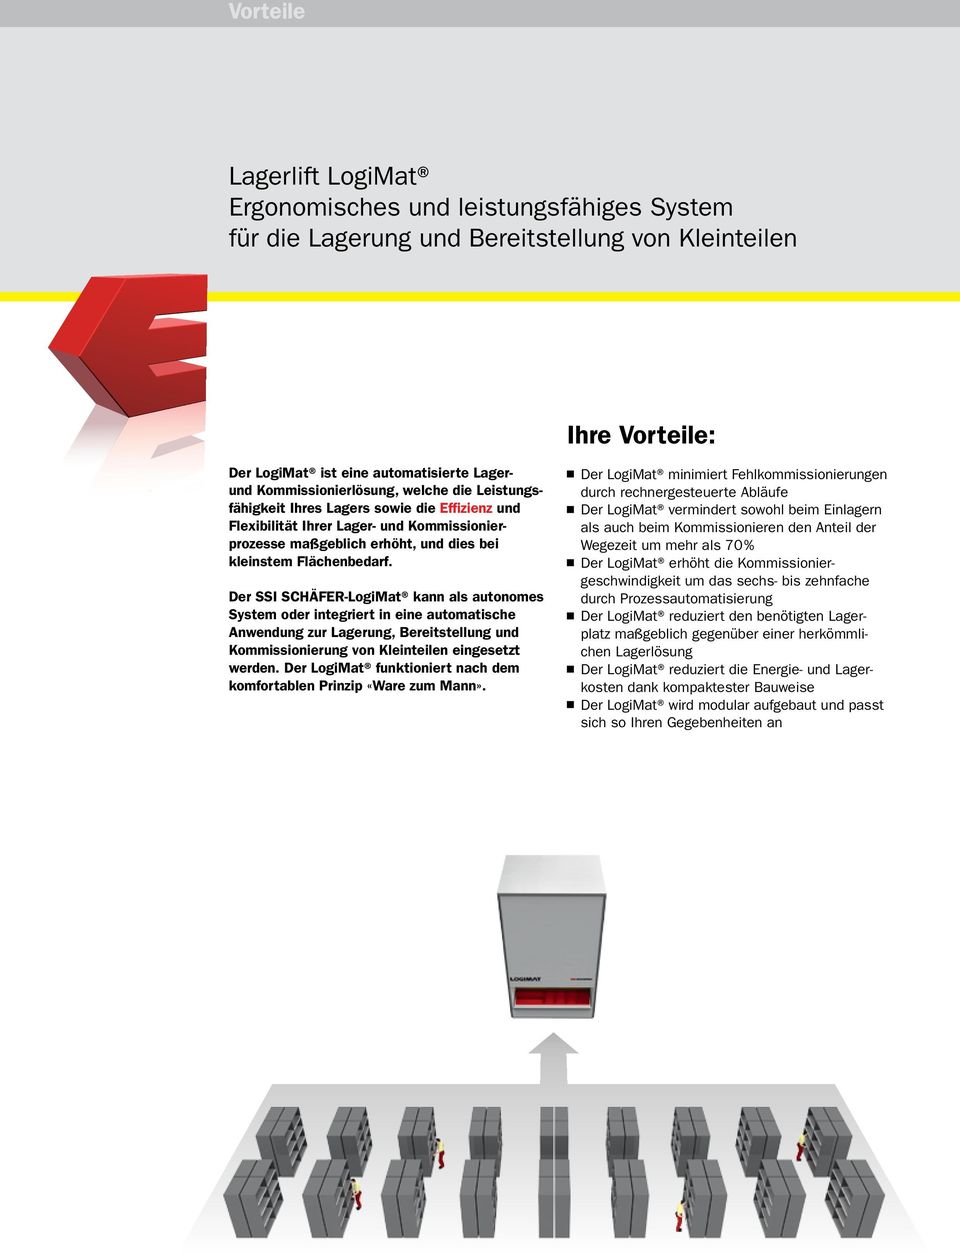 Der SSI SCHÄFER-LogiMat kann als autonomes System oder integriert in eine automatische Anwendung zur Lagerung, Bereitstellung und Kommissionierung von Kleinteilen eingesetzt werden.